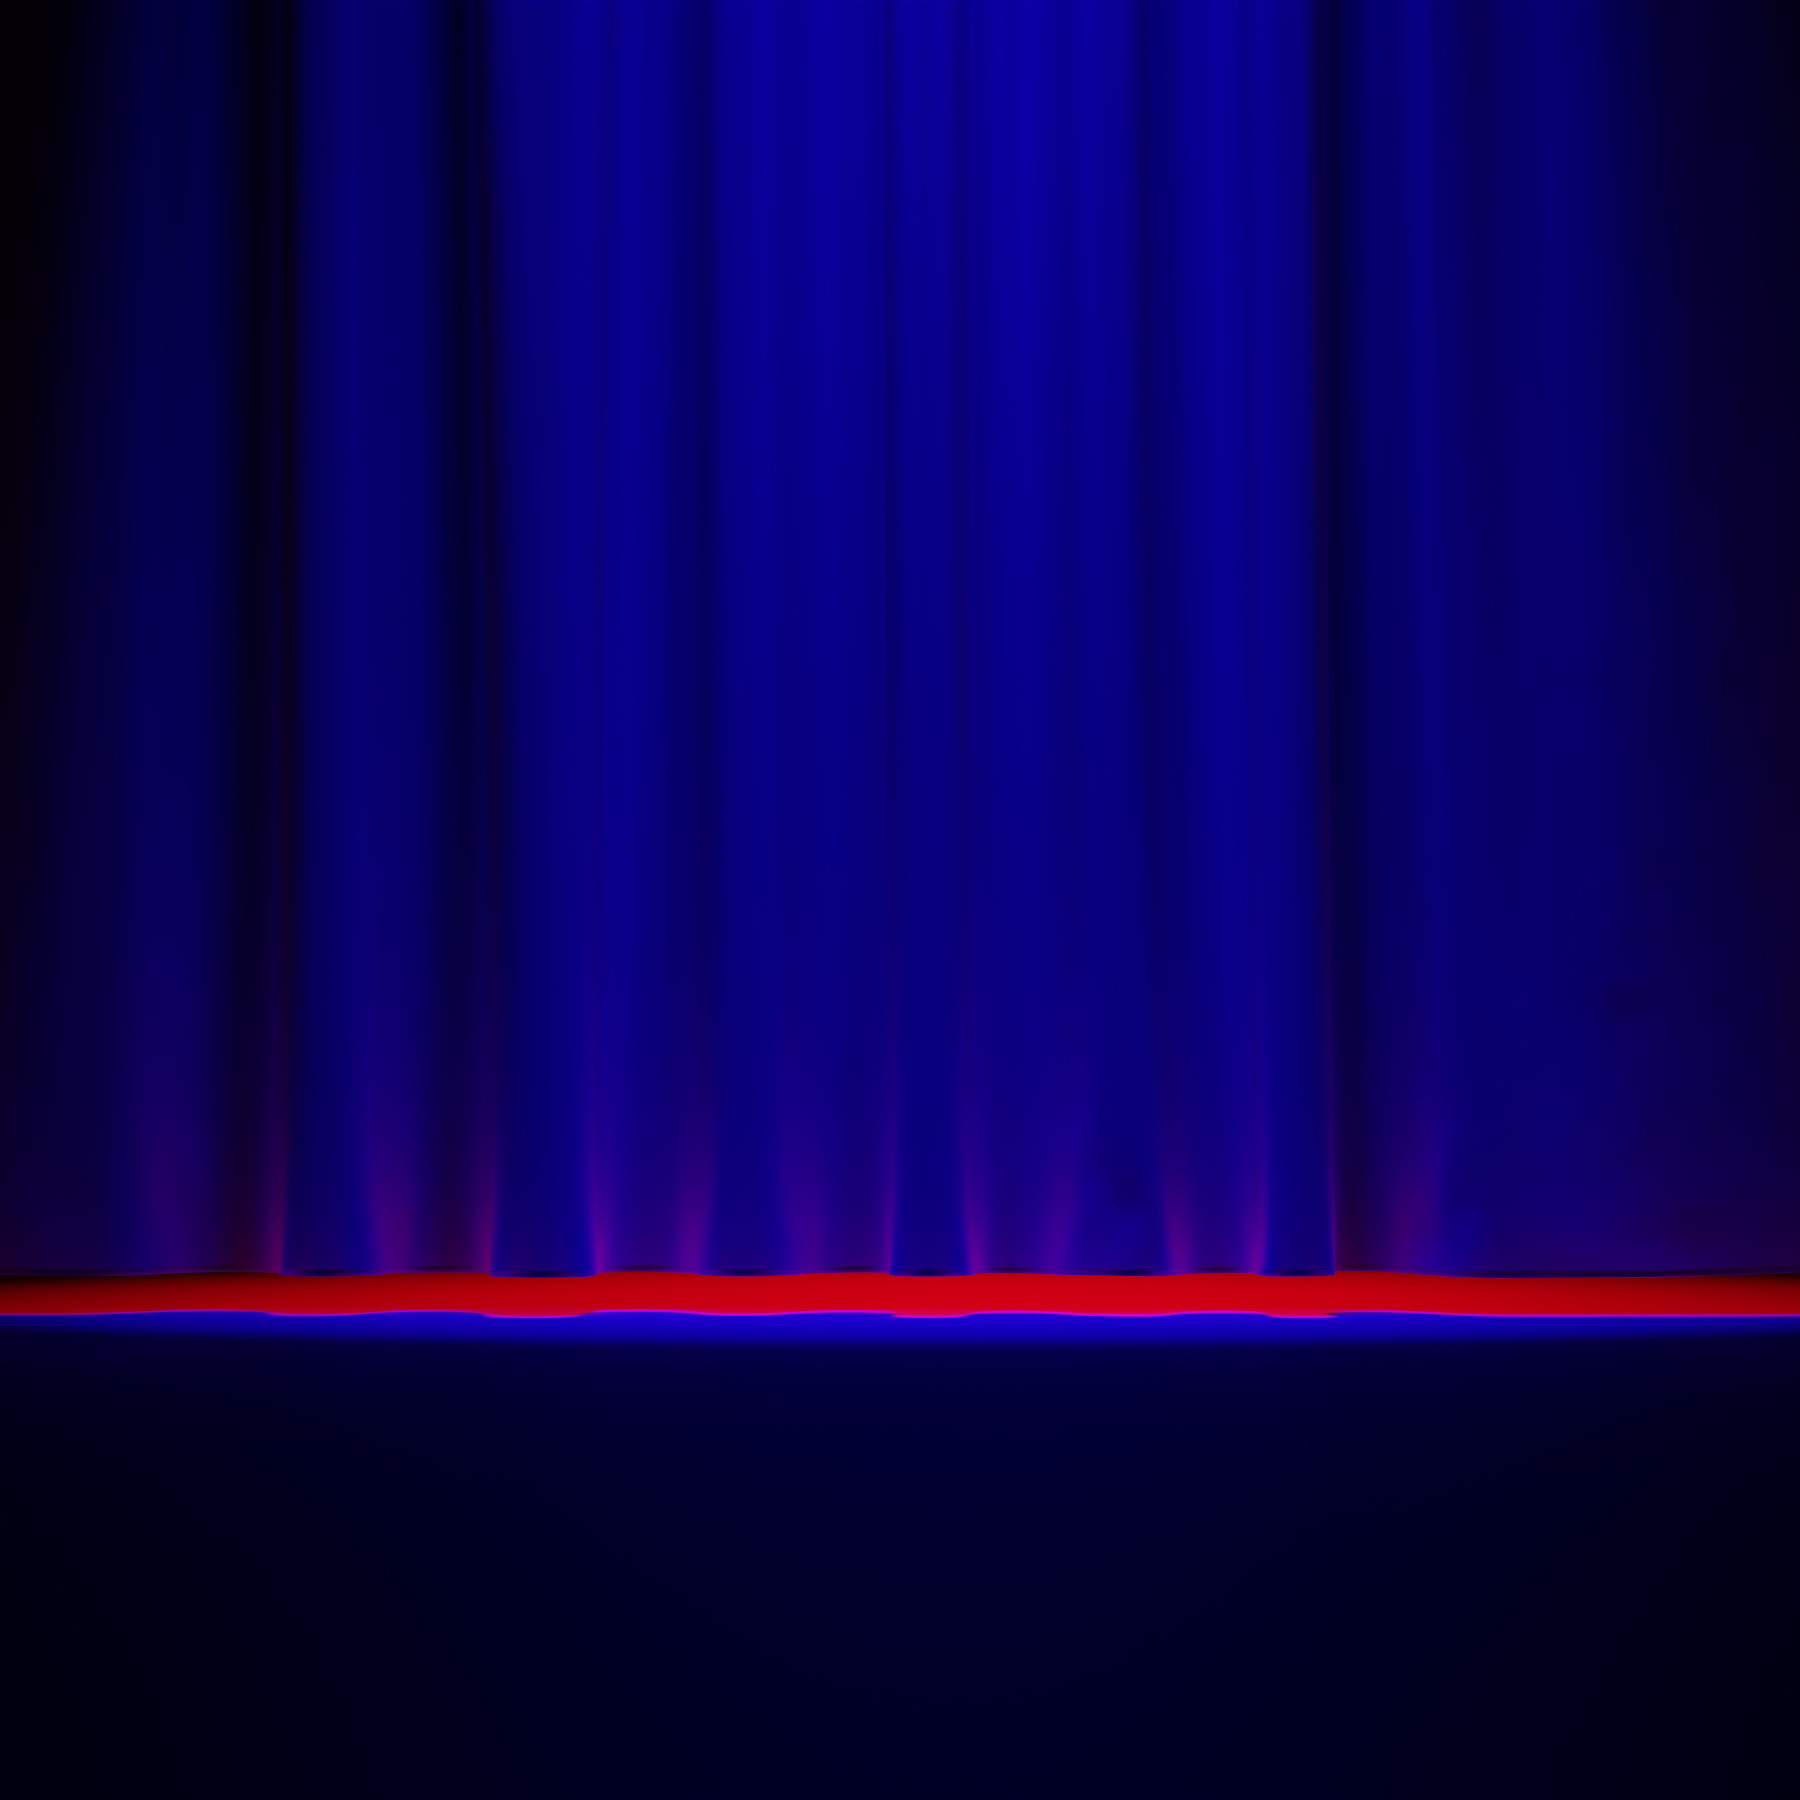 Virtuelle abstrakte Szenerie, Abstrakte digitale Kunst, Raytracing, Computer-gerendertes Bild, 2022. Die Szene erinnert an ein Theater, in dem man vor einem blau beleuchteten, noch geschlossenen Vorhang sitzt. Ein starkes rotes Licht, das durch den Spalt zwischen Vorhang und Bühne scheint, deutet an, dass bald etwas passieren wird.